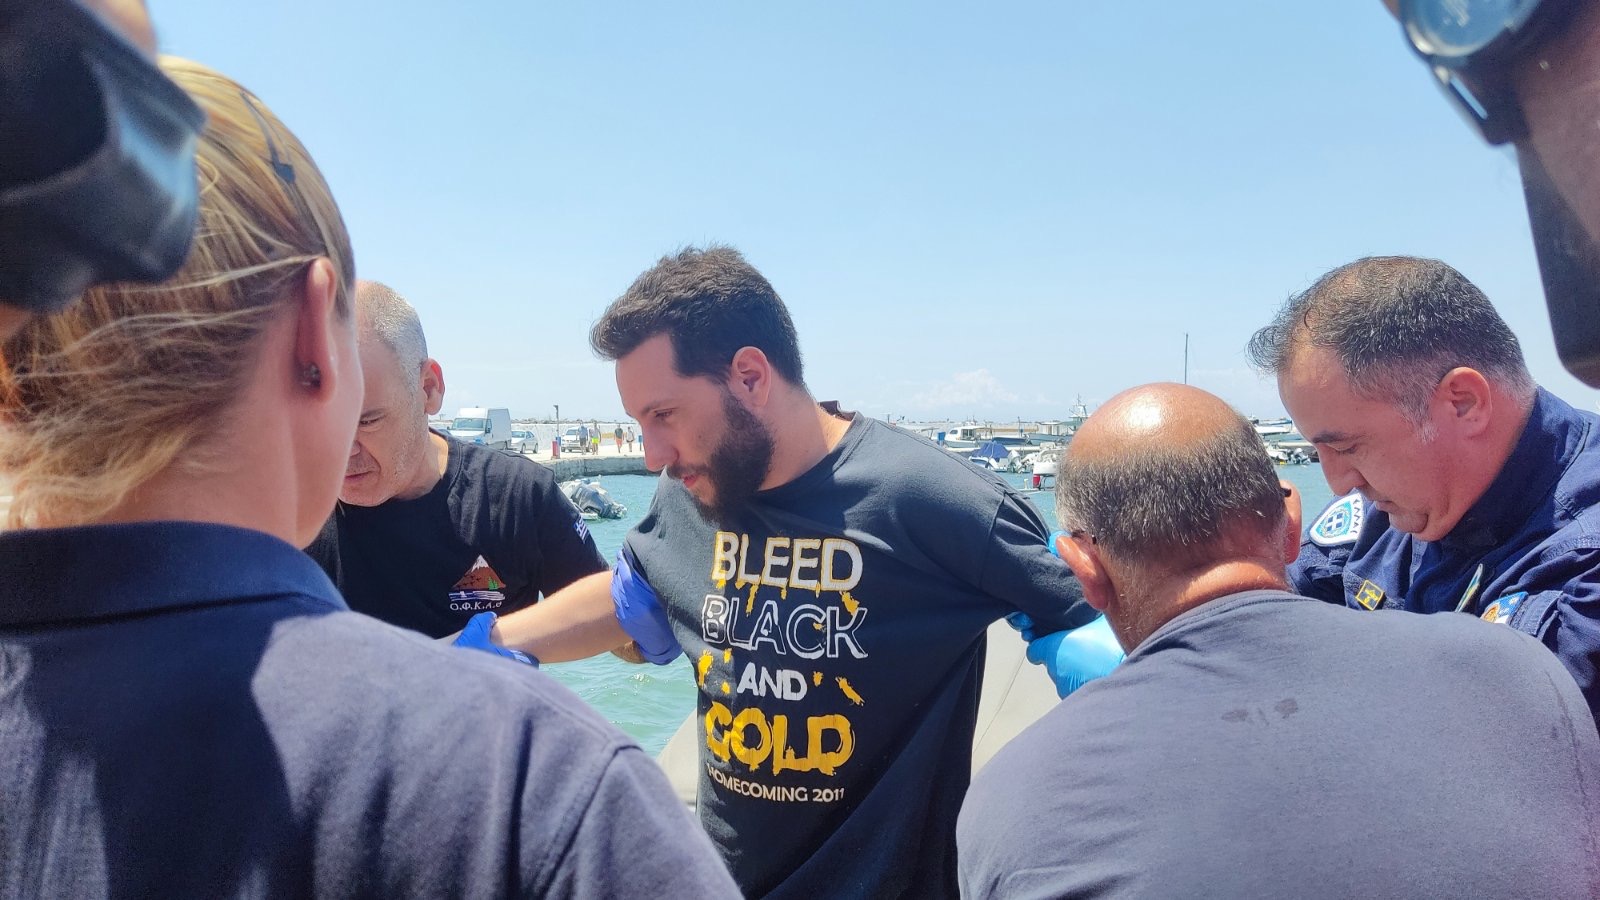 Χαλκιδική: «Συγκεντρώνεσαι στην επιβίωση» λέει ο Ιβάν που πάλευε για 20 ώρες στη θάλασσα